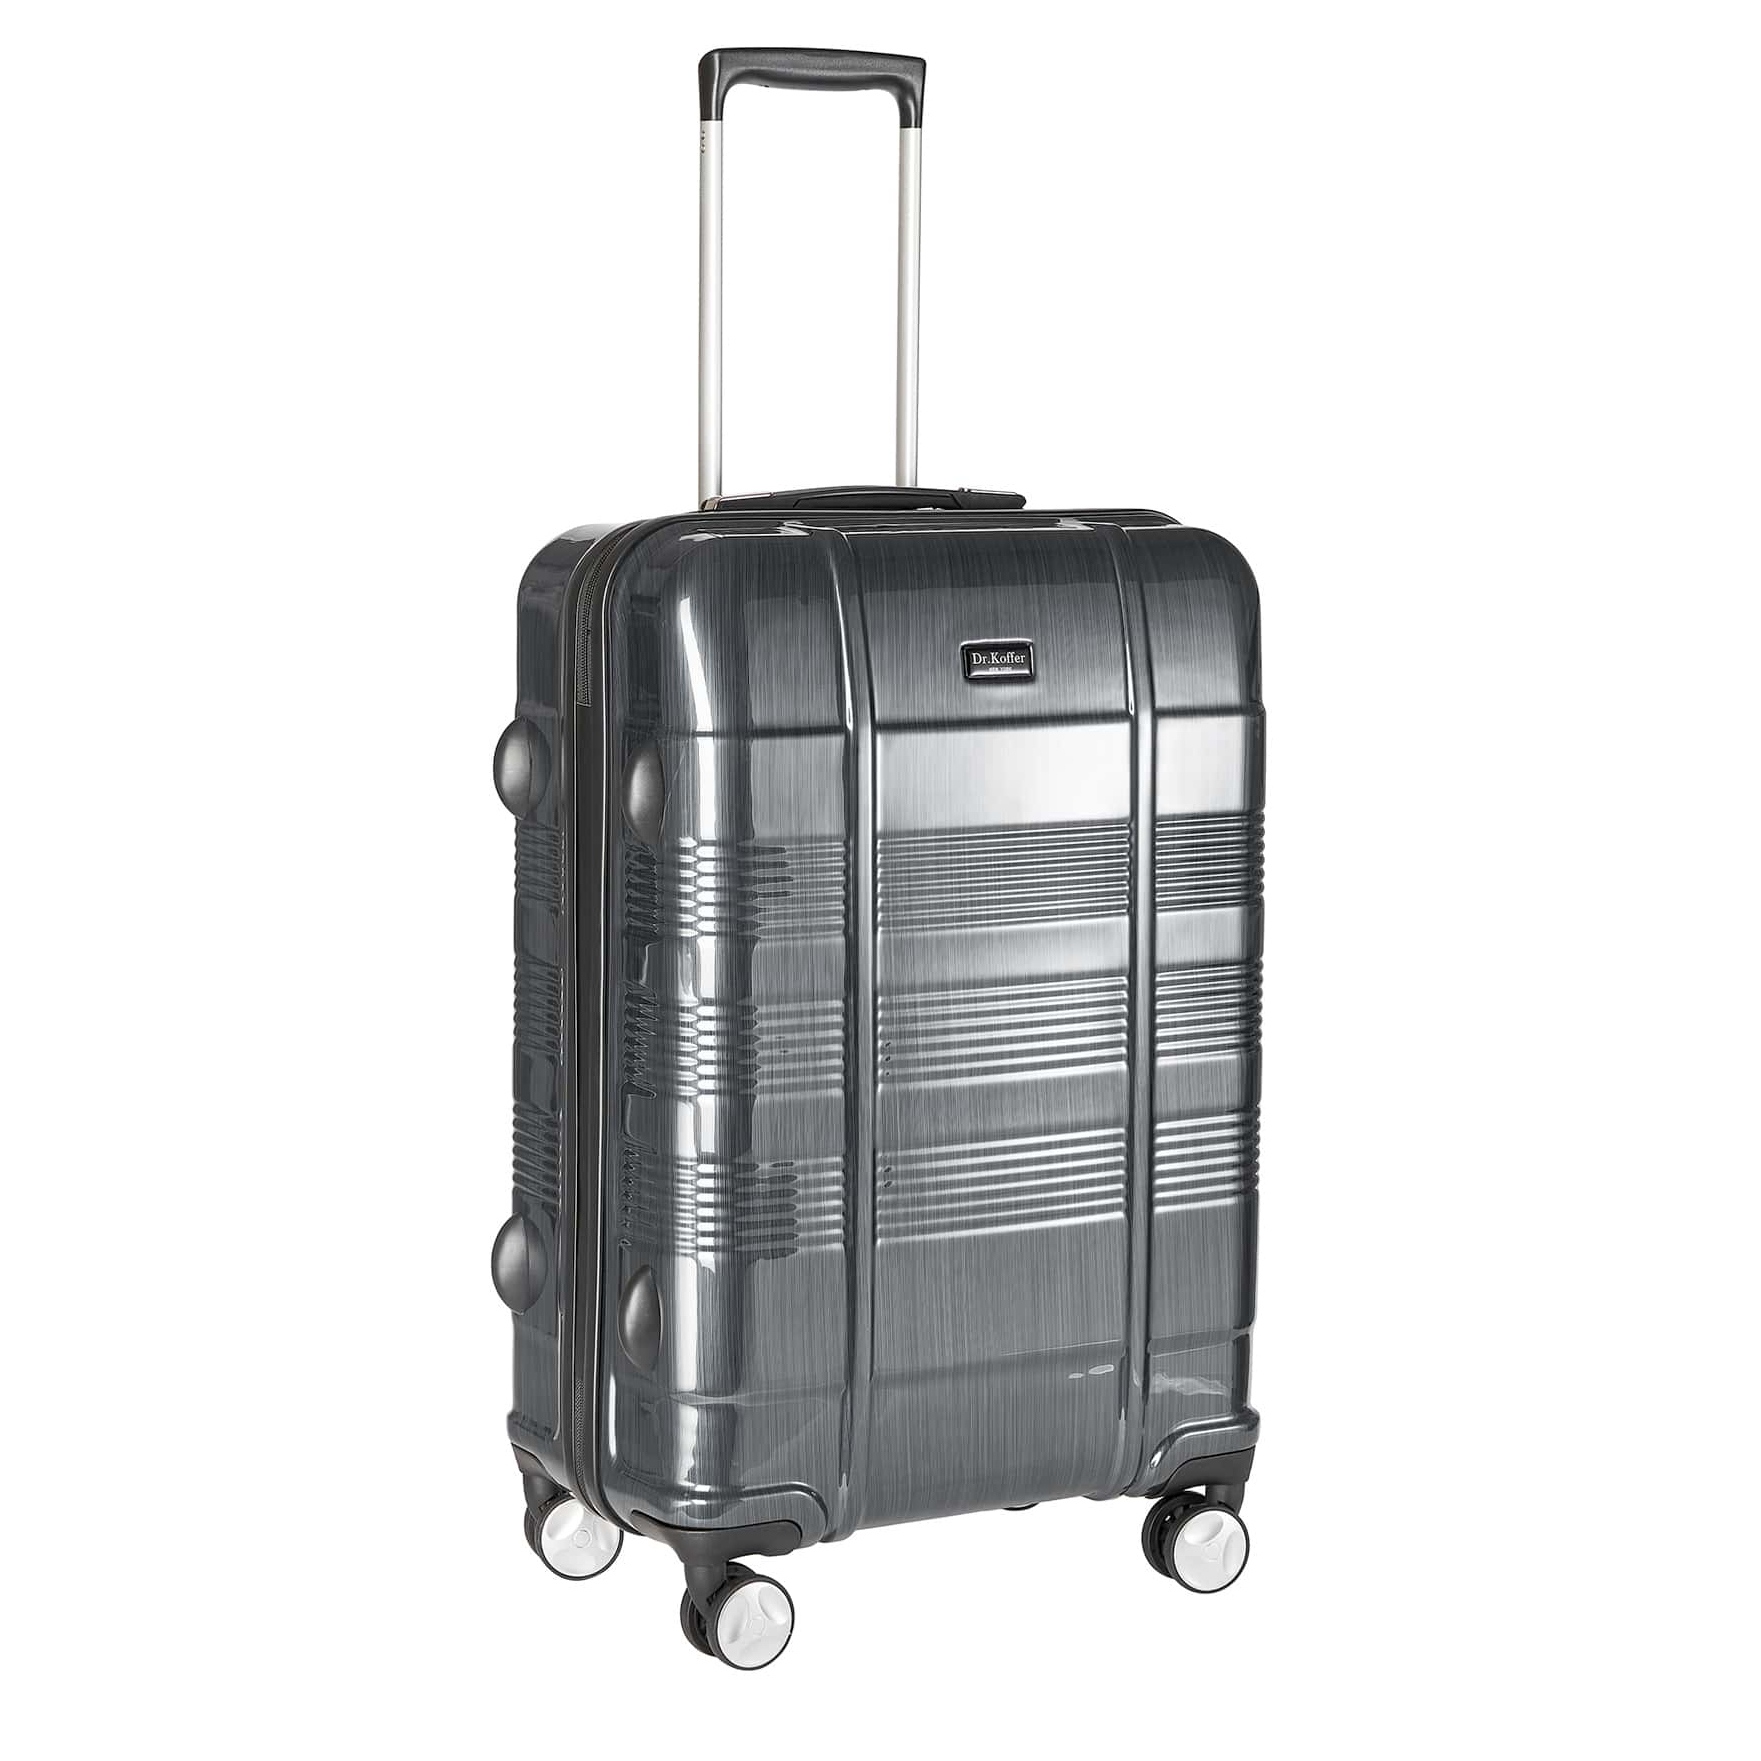 Др.Коффер L100TC24-250-27 чемодан, цвет серый - фото 1